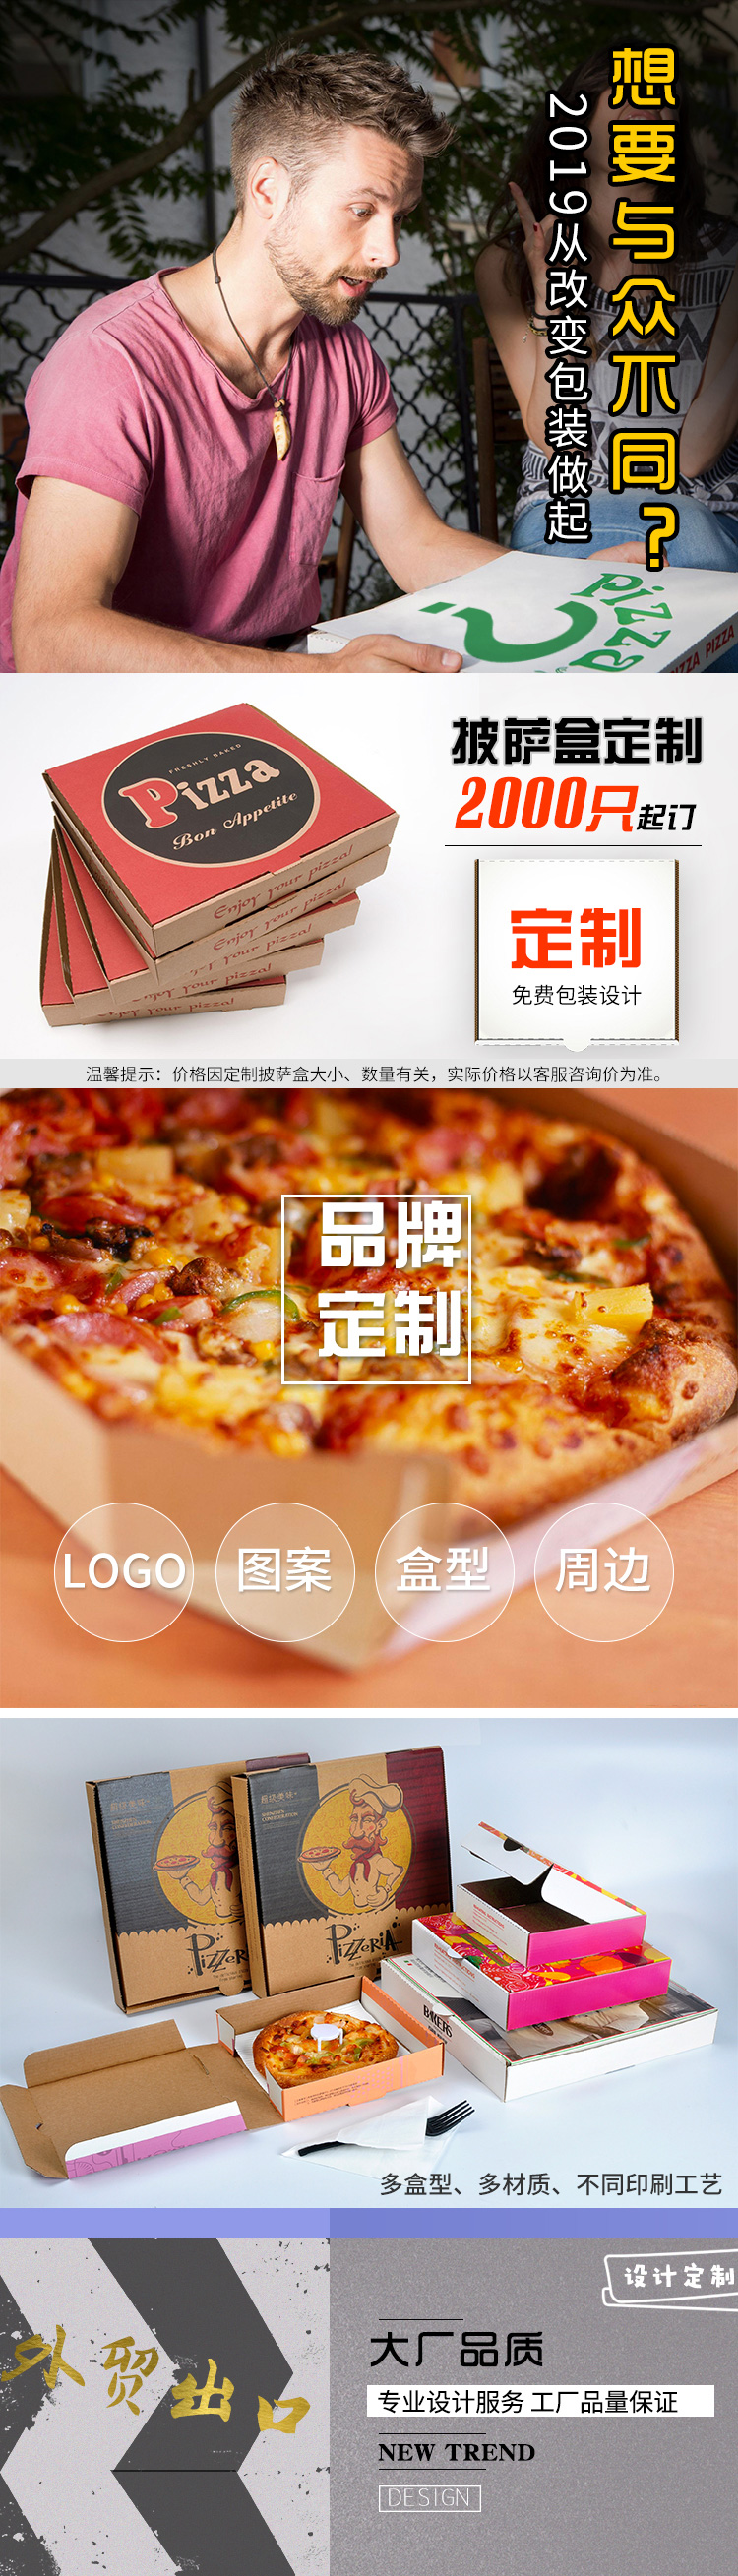 披萨盒详情页（牛皮纸版）_01.jpg